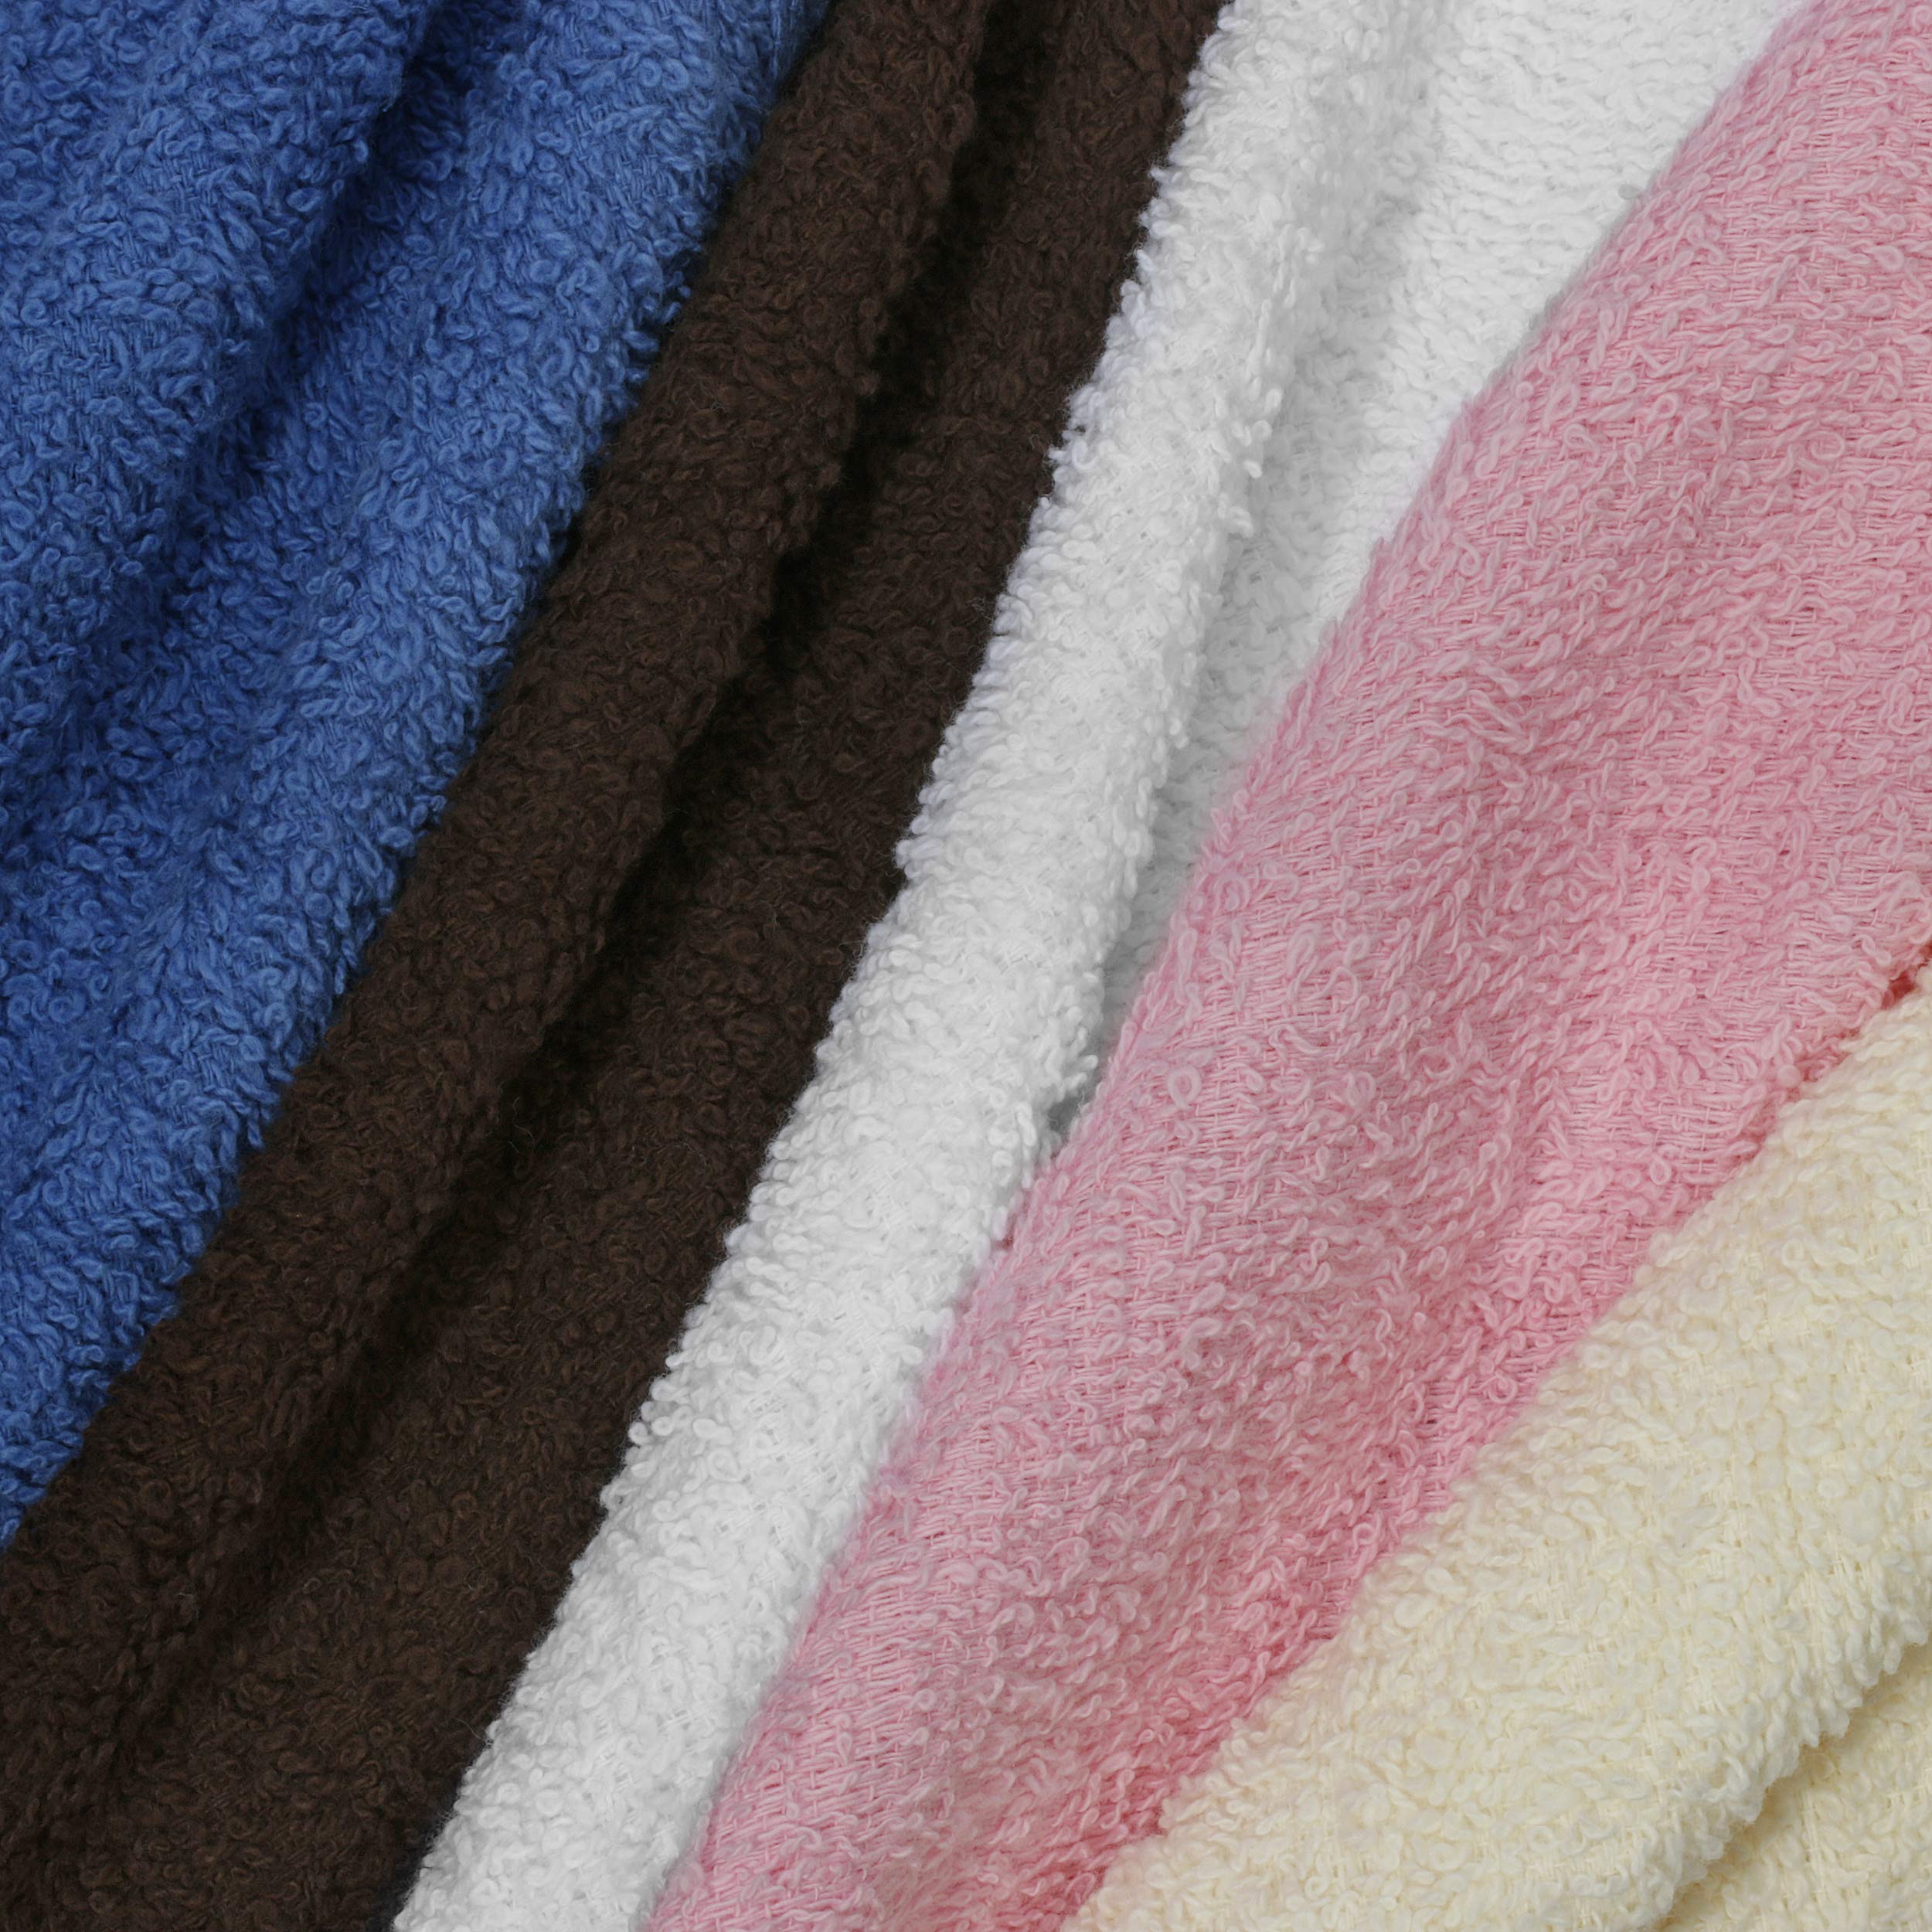 Simpli-Magic 79264 Cotton Washcloths, Size: 12”x12”, Multi Color, 50 Pack